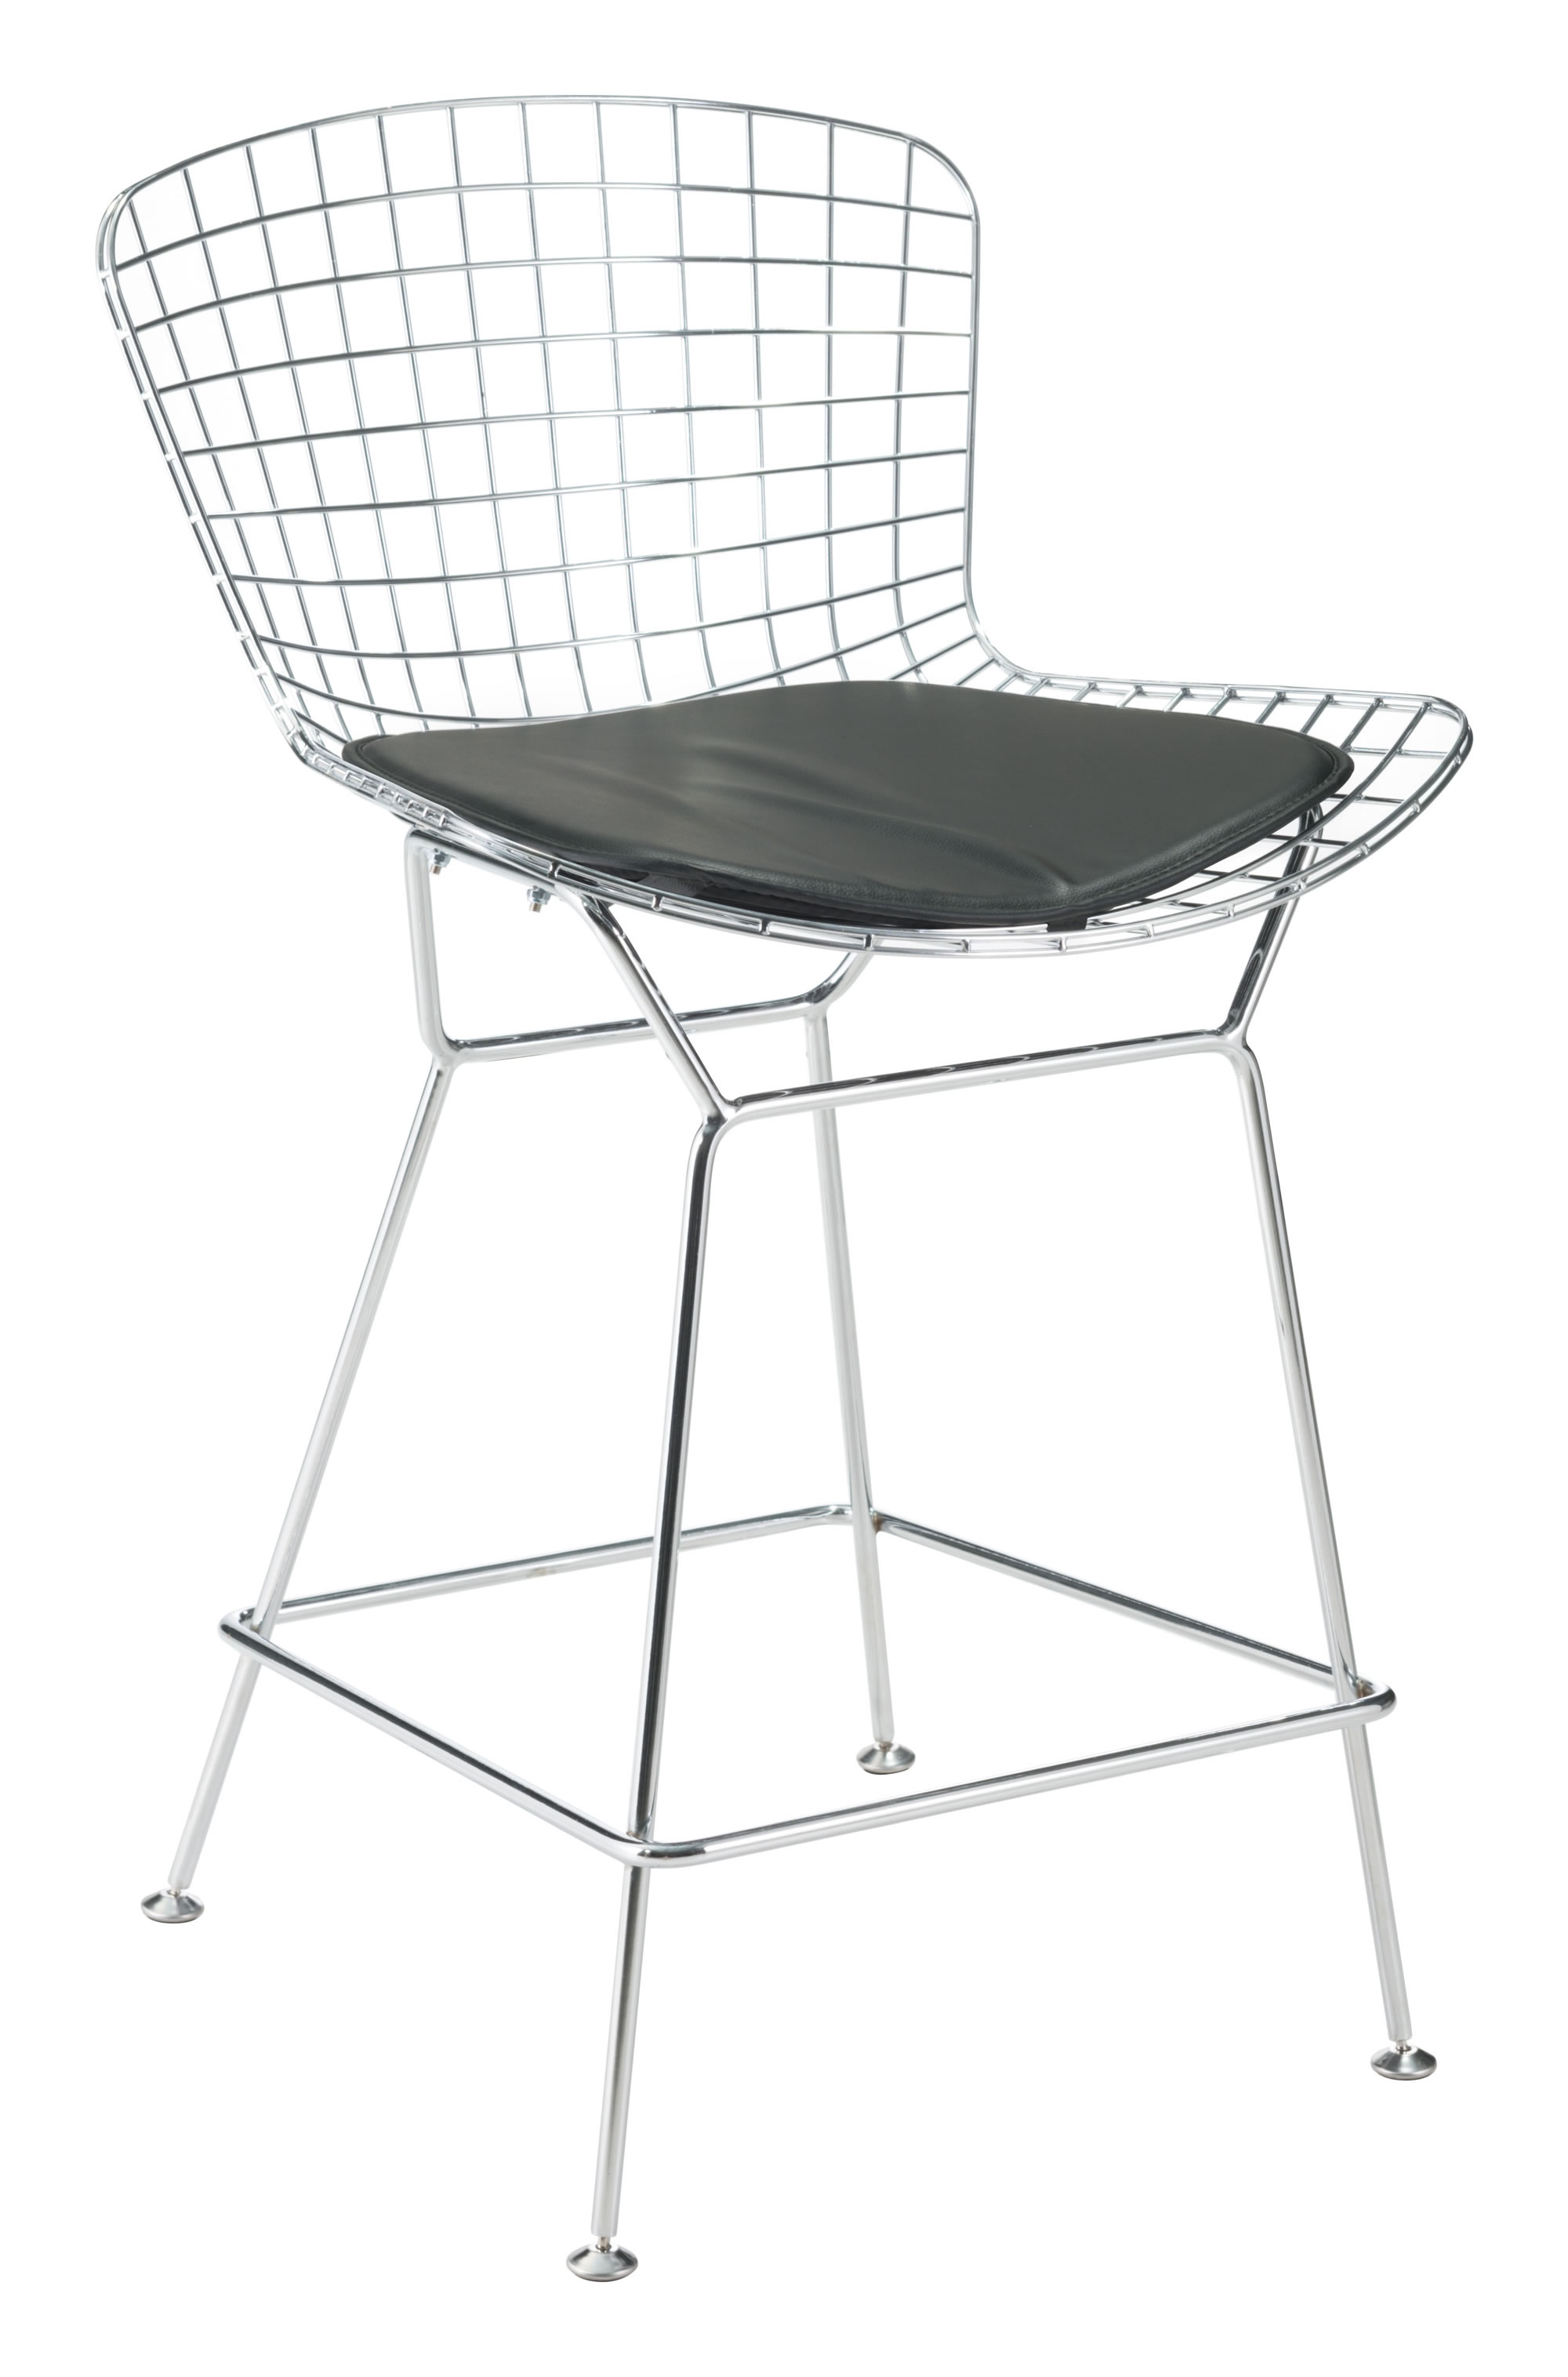 17" x 17" x 0.5" Black, Leatherette, Chair Cushion